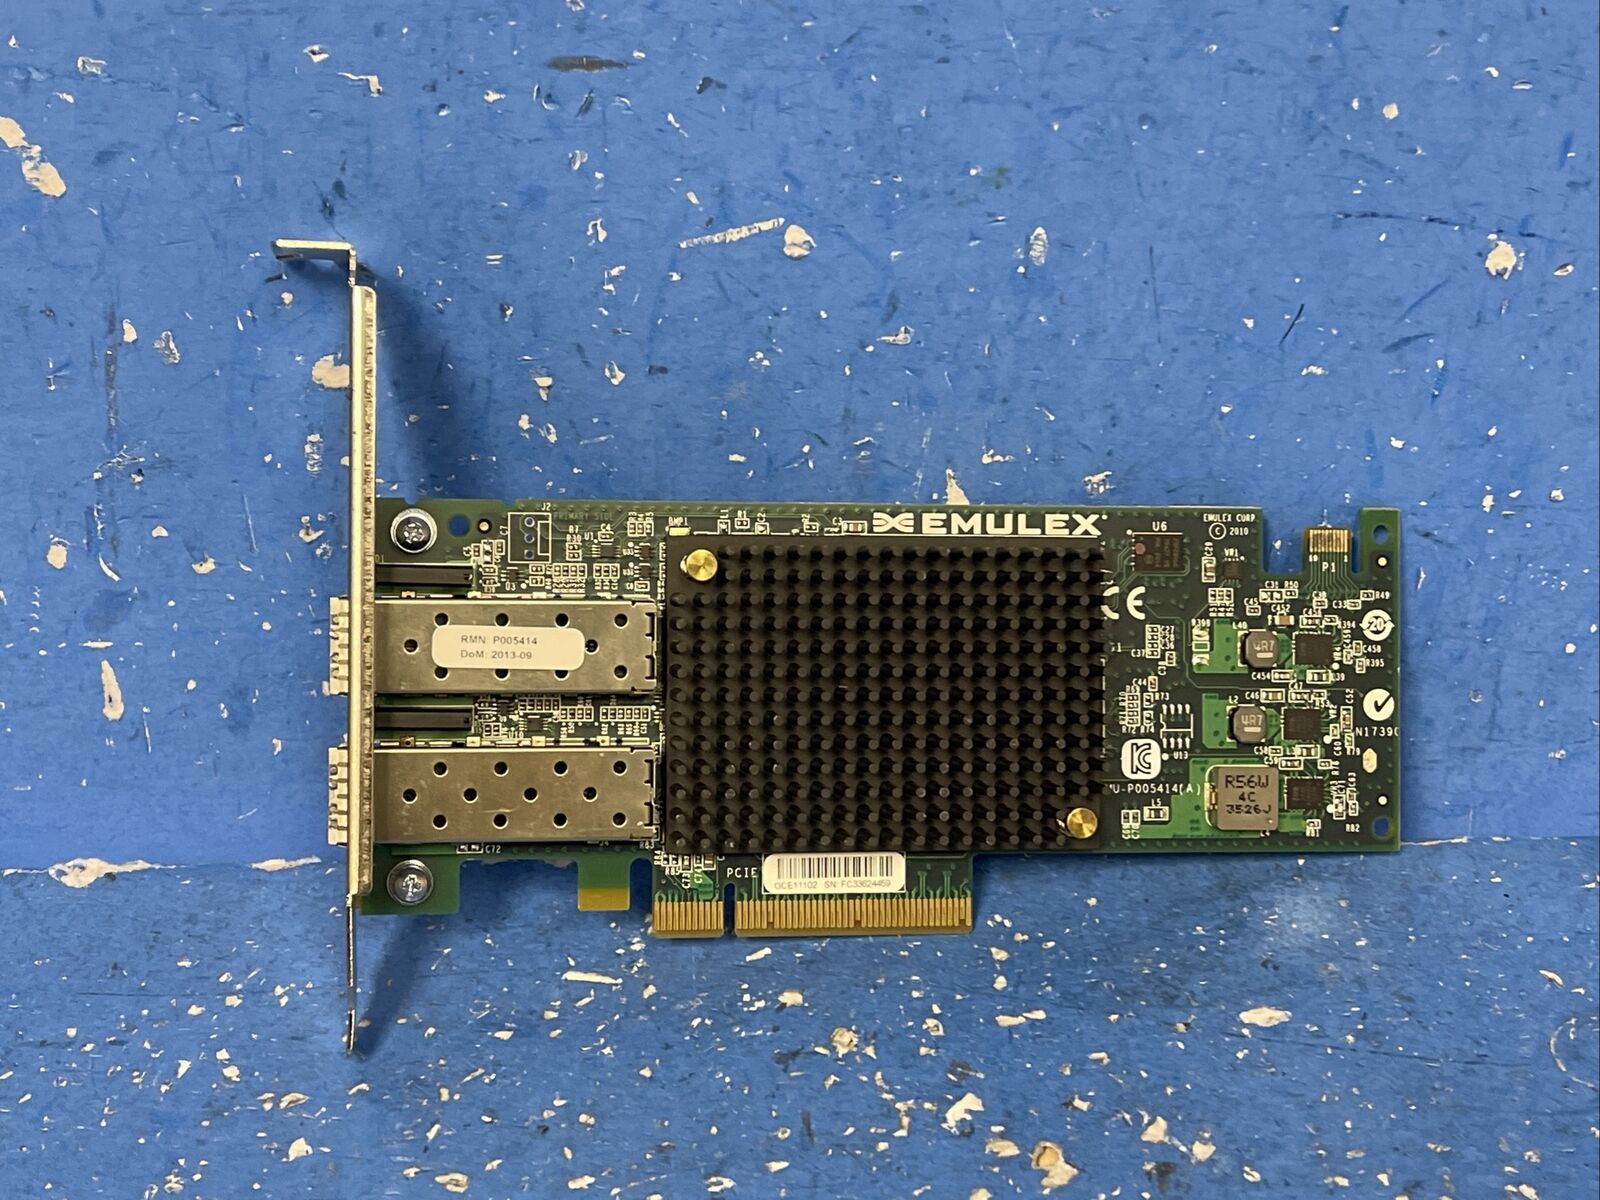 P005414-01H EMULEX 10GB PCI-E FIBRE CHANNEL NETWORK ADAPTER CARD